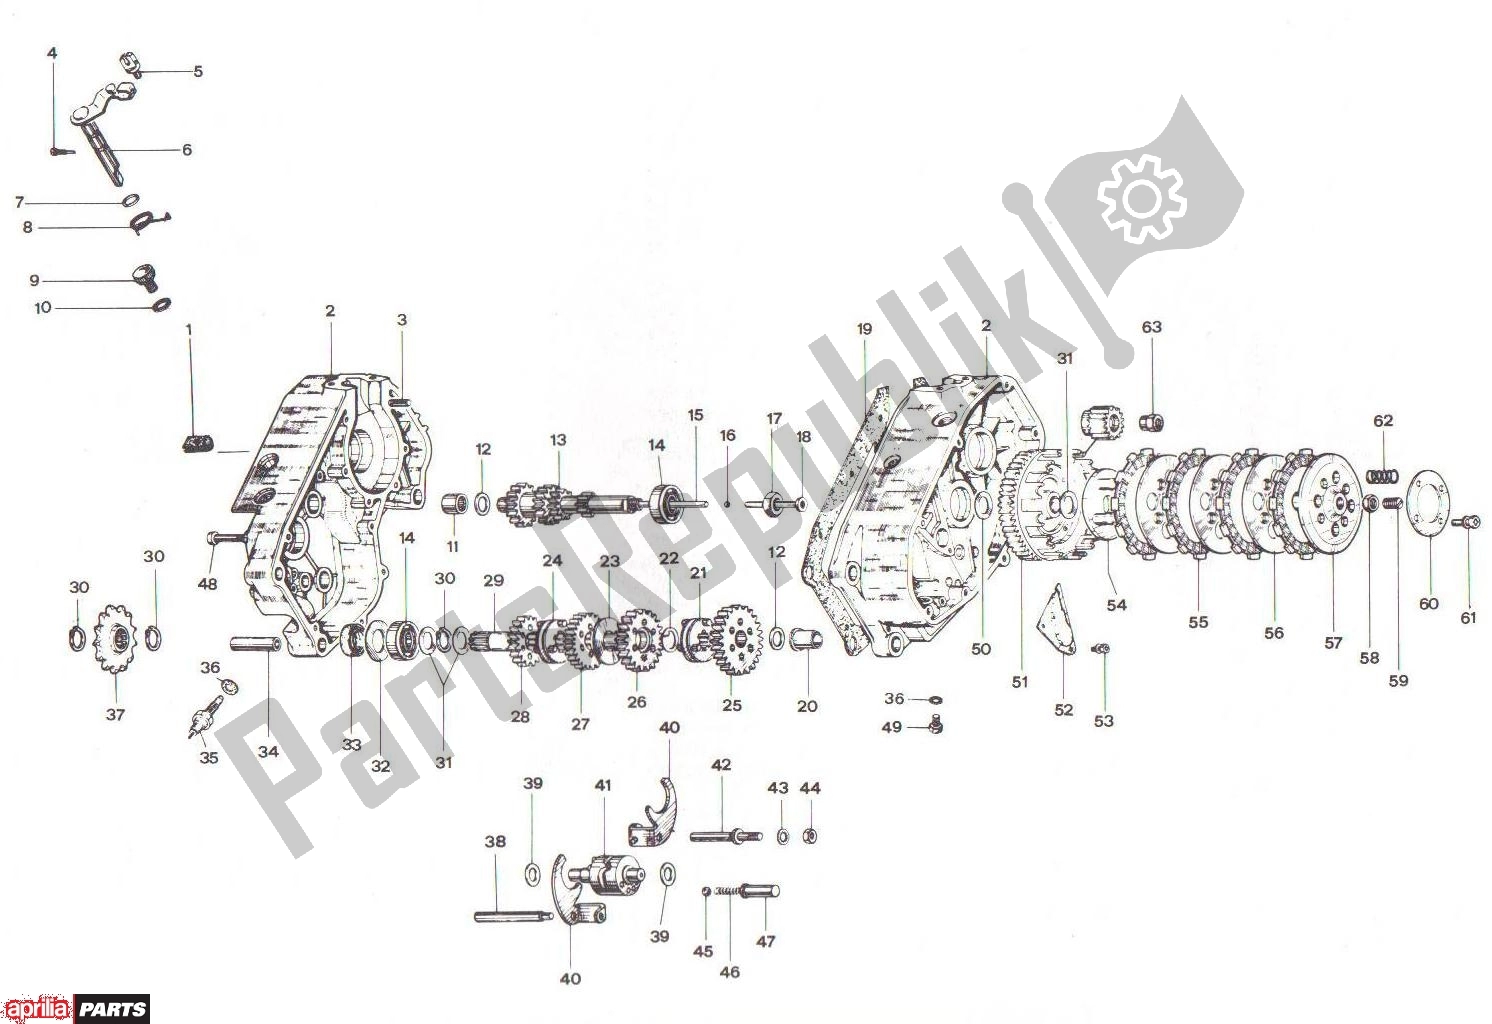 Alle onderdelen voor de Crankcase Clutch Transmission Basamento Frizione Cambio van de Aprilia RV3/4 700 50 1986 - 1992